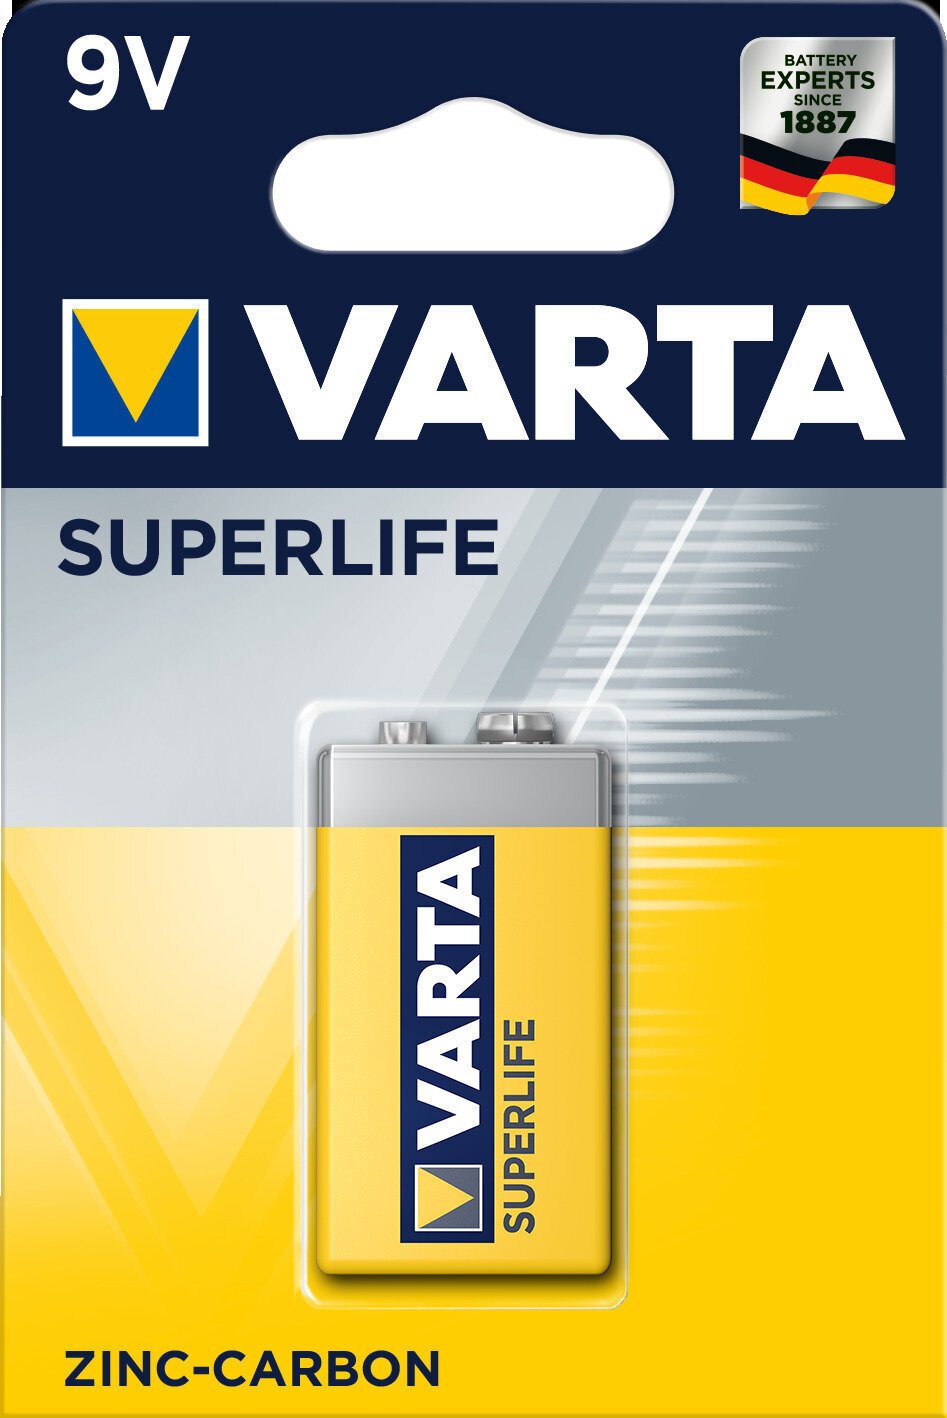 9V batéria Varta 9V batéria 6F22 Superlife